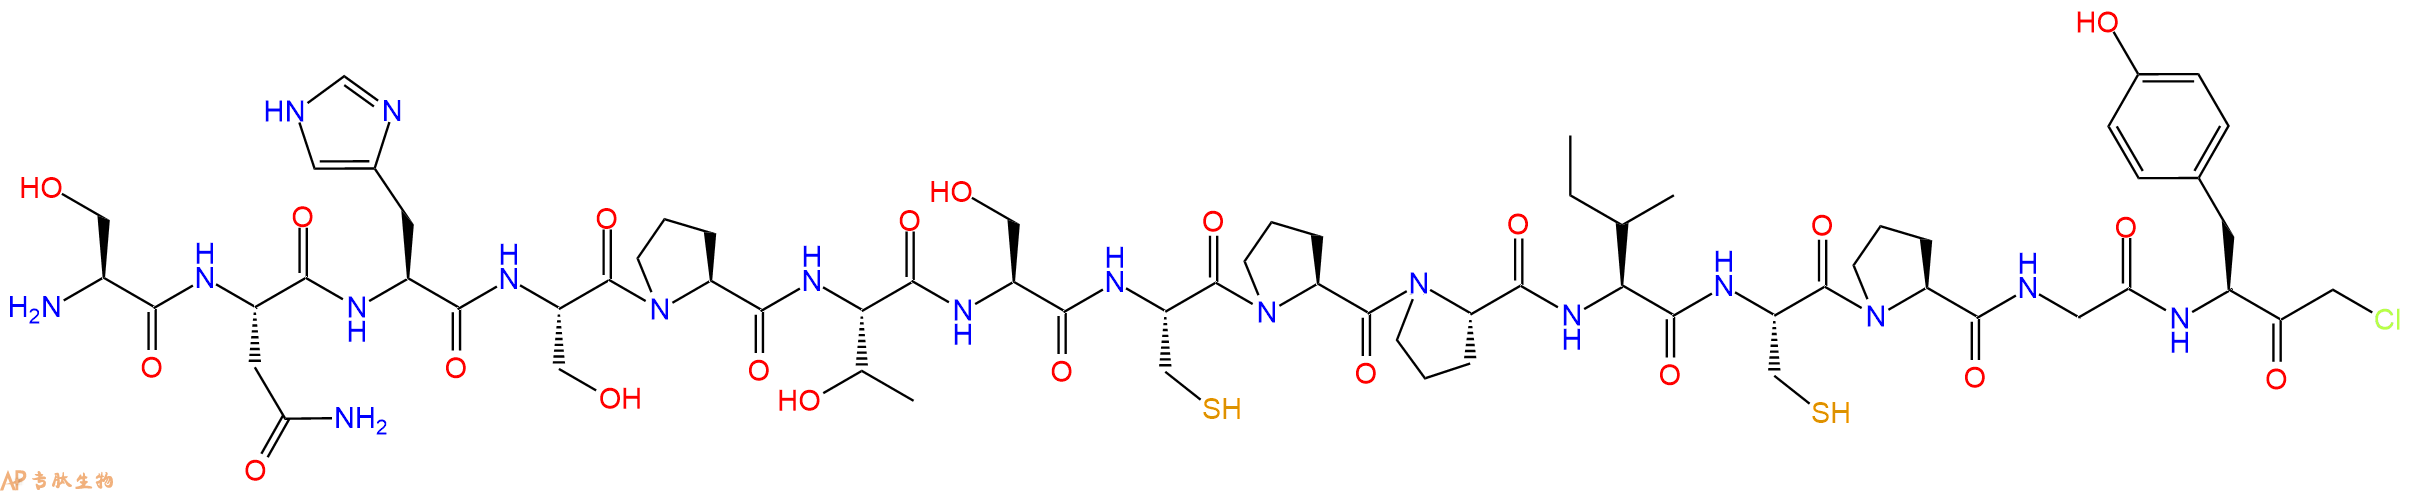 专肽生物产品H2N-Ser-Asn-His-Ser-Pro-Thr-Ser-Cys-Pro-Pro-Ile-Cy